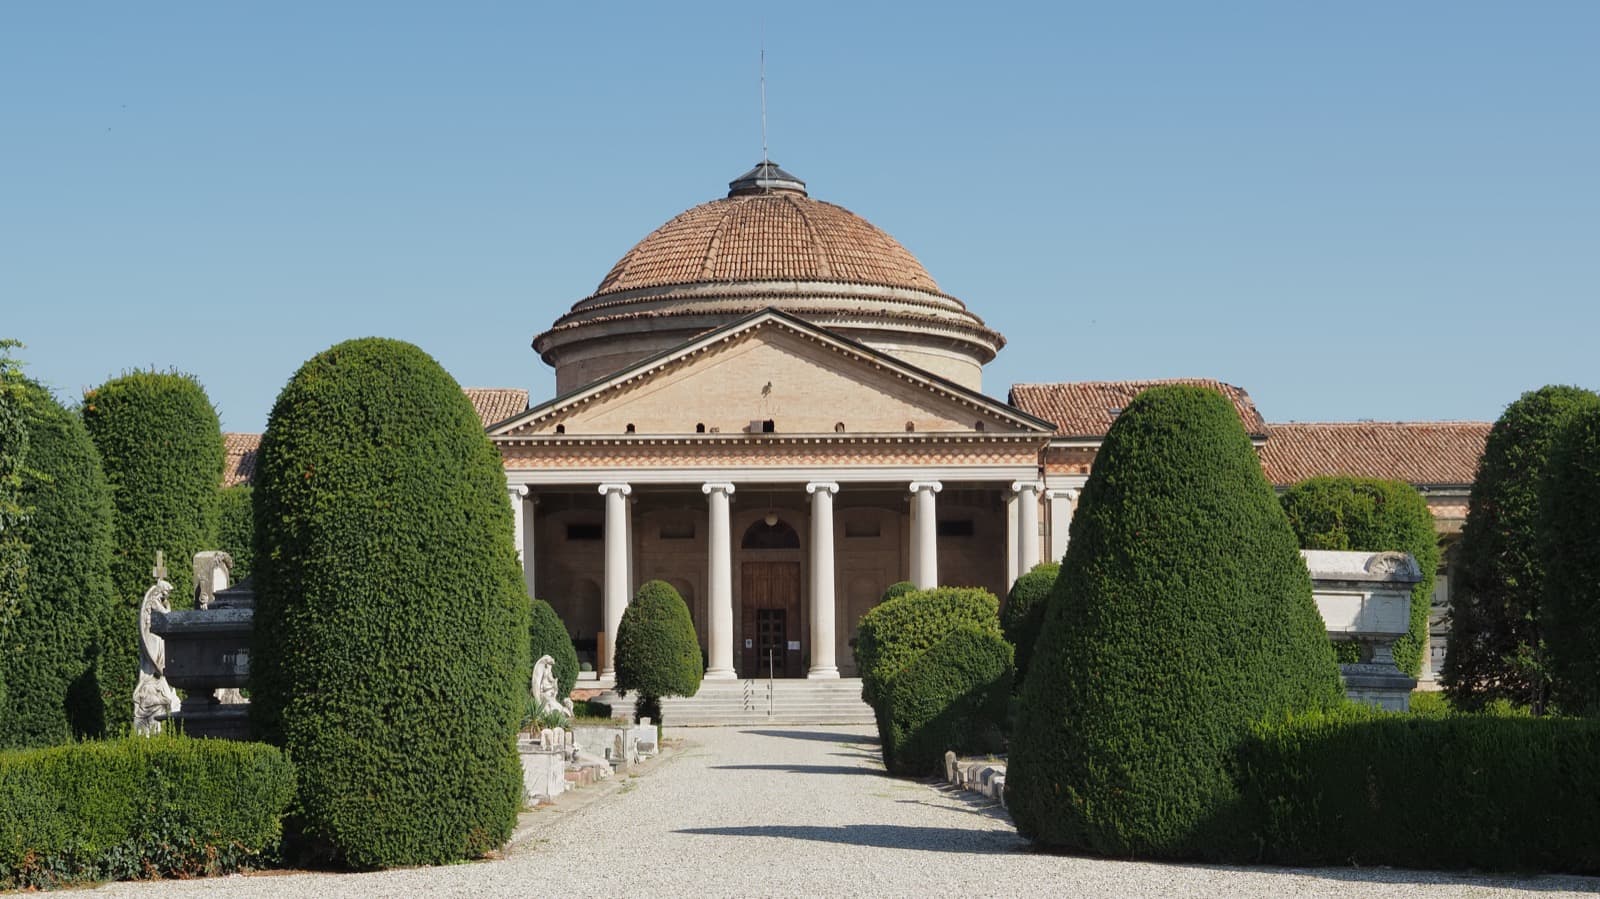 Cimitero storico monumentale di San Cataldo, Modena Ph. Gaia Conventi via shutterstock